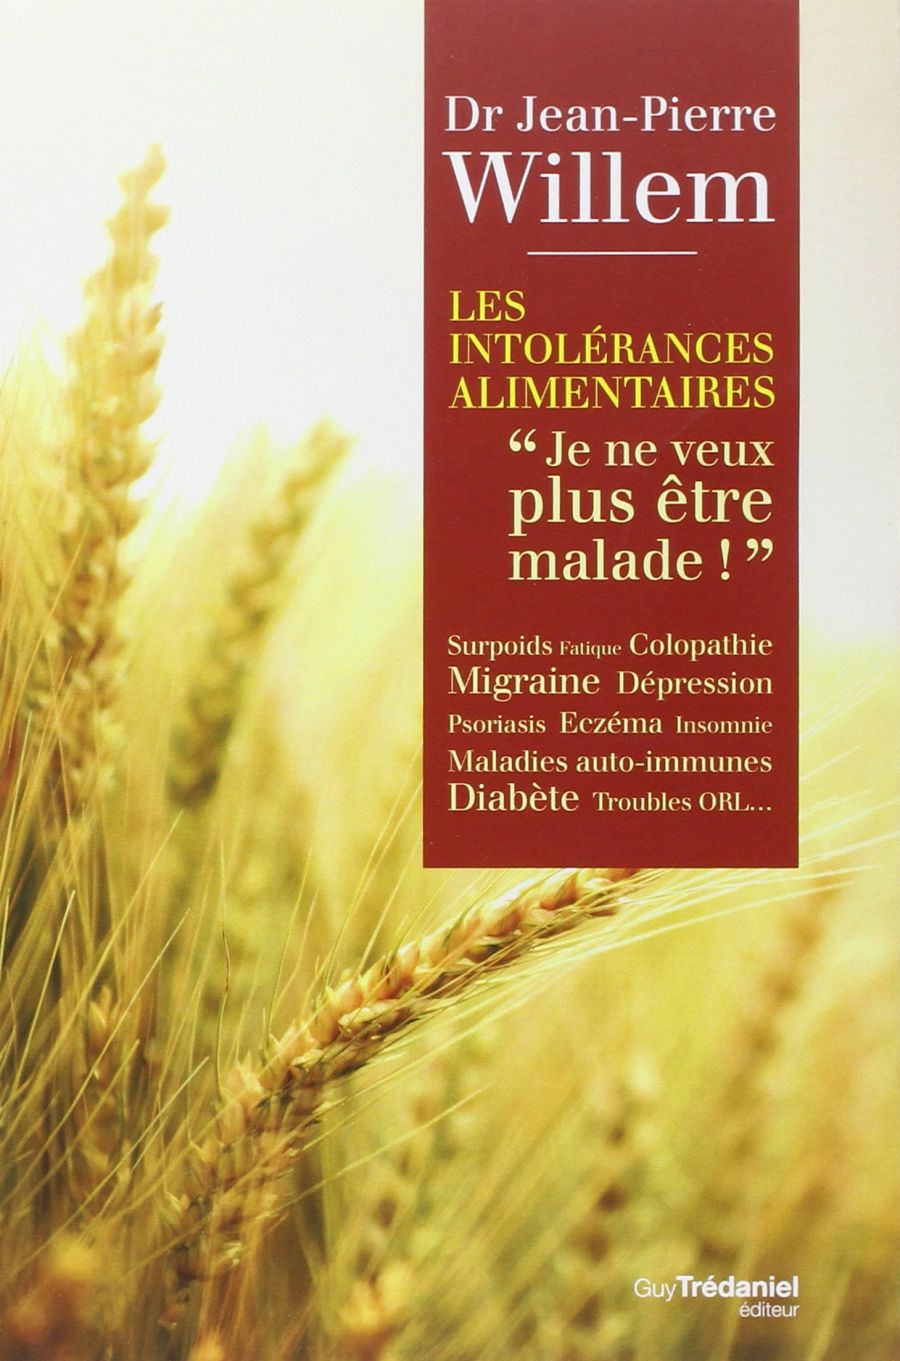 Couverture du livre « Les intolérances alimentaires, je ne veux plus être malade » écrit par Dr Jean-pierre Willem